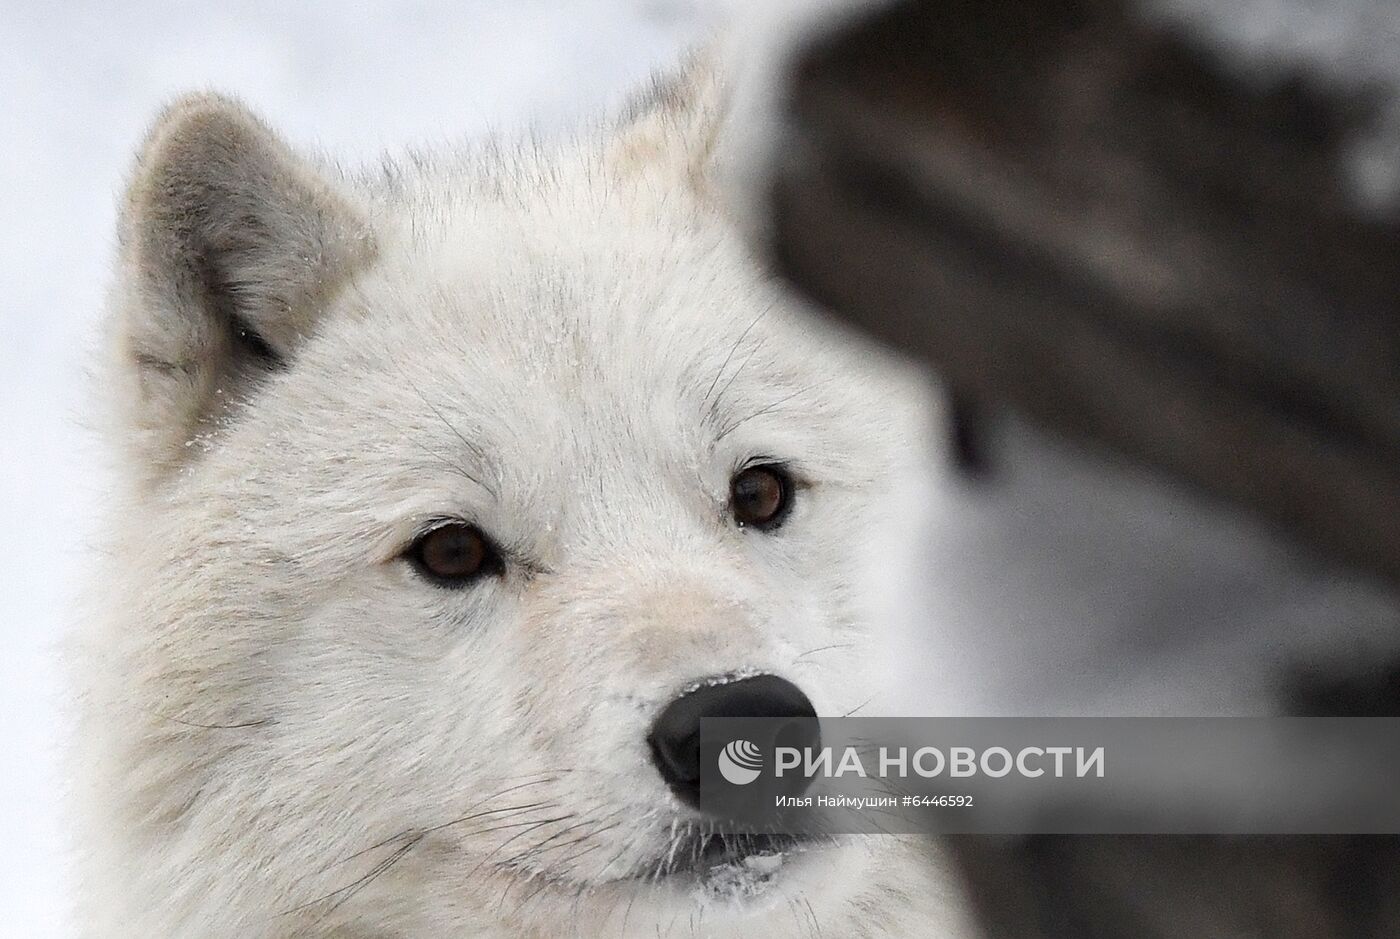 Зимовка животных в парке "Роев Ручей" в Красноярске